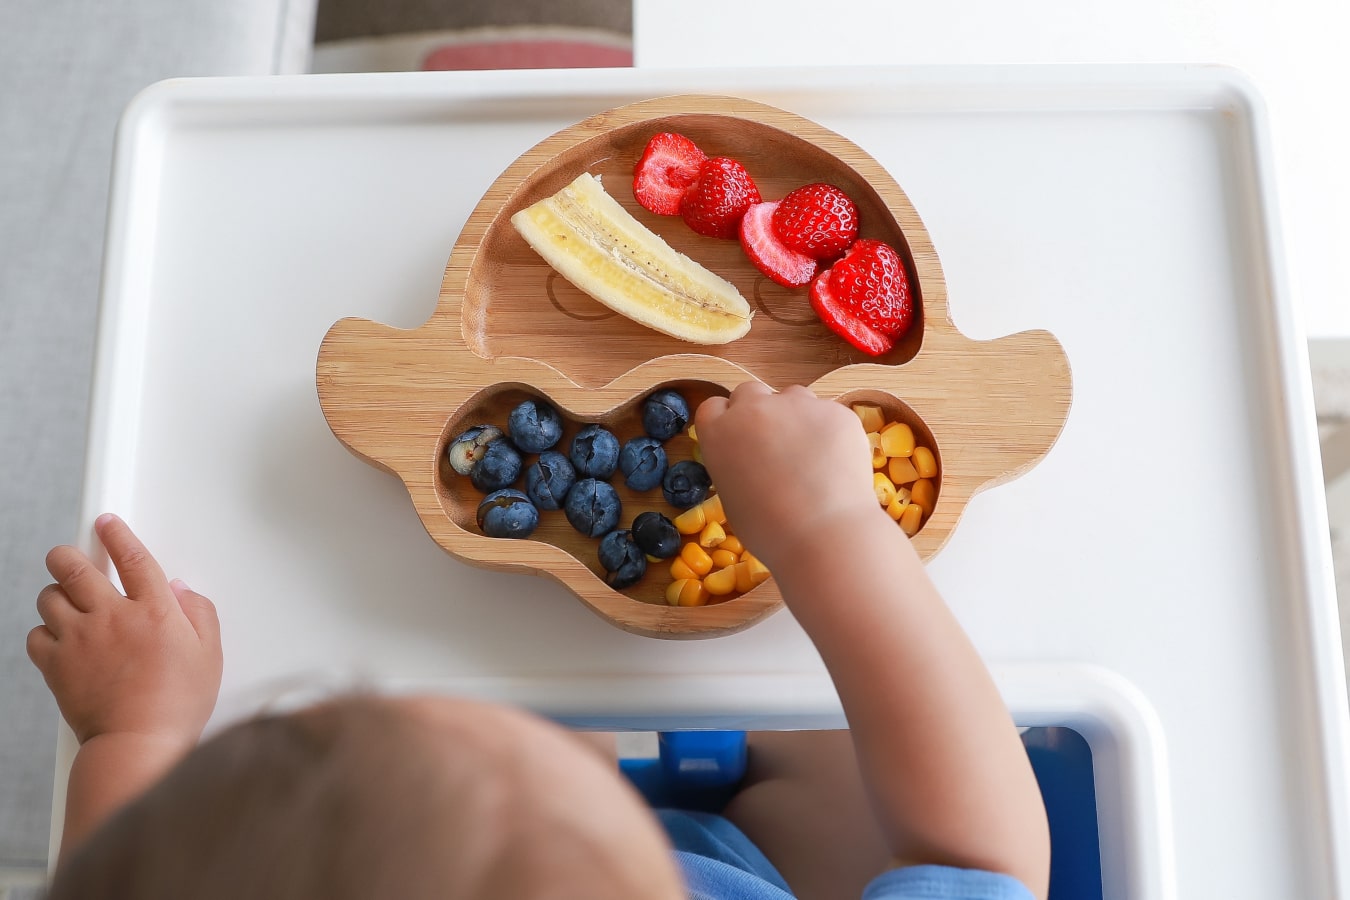 En un plato de madera con compartimentos hay frutas y verduras de colores: plátano, arándanos, maíz y fresas. El niño estira la mano para coger la comida